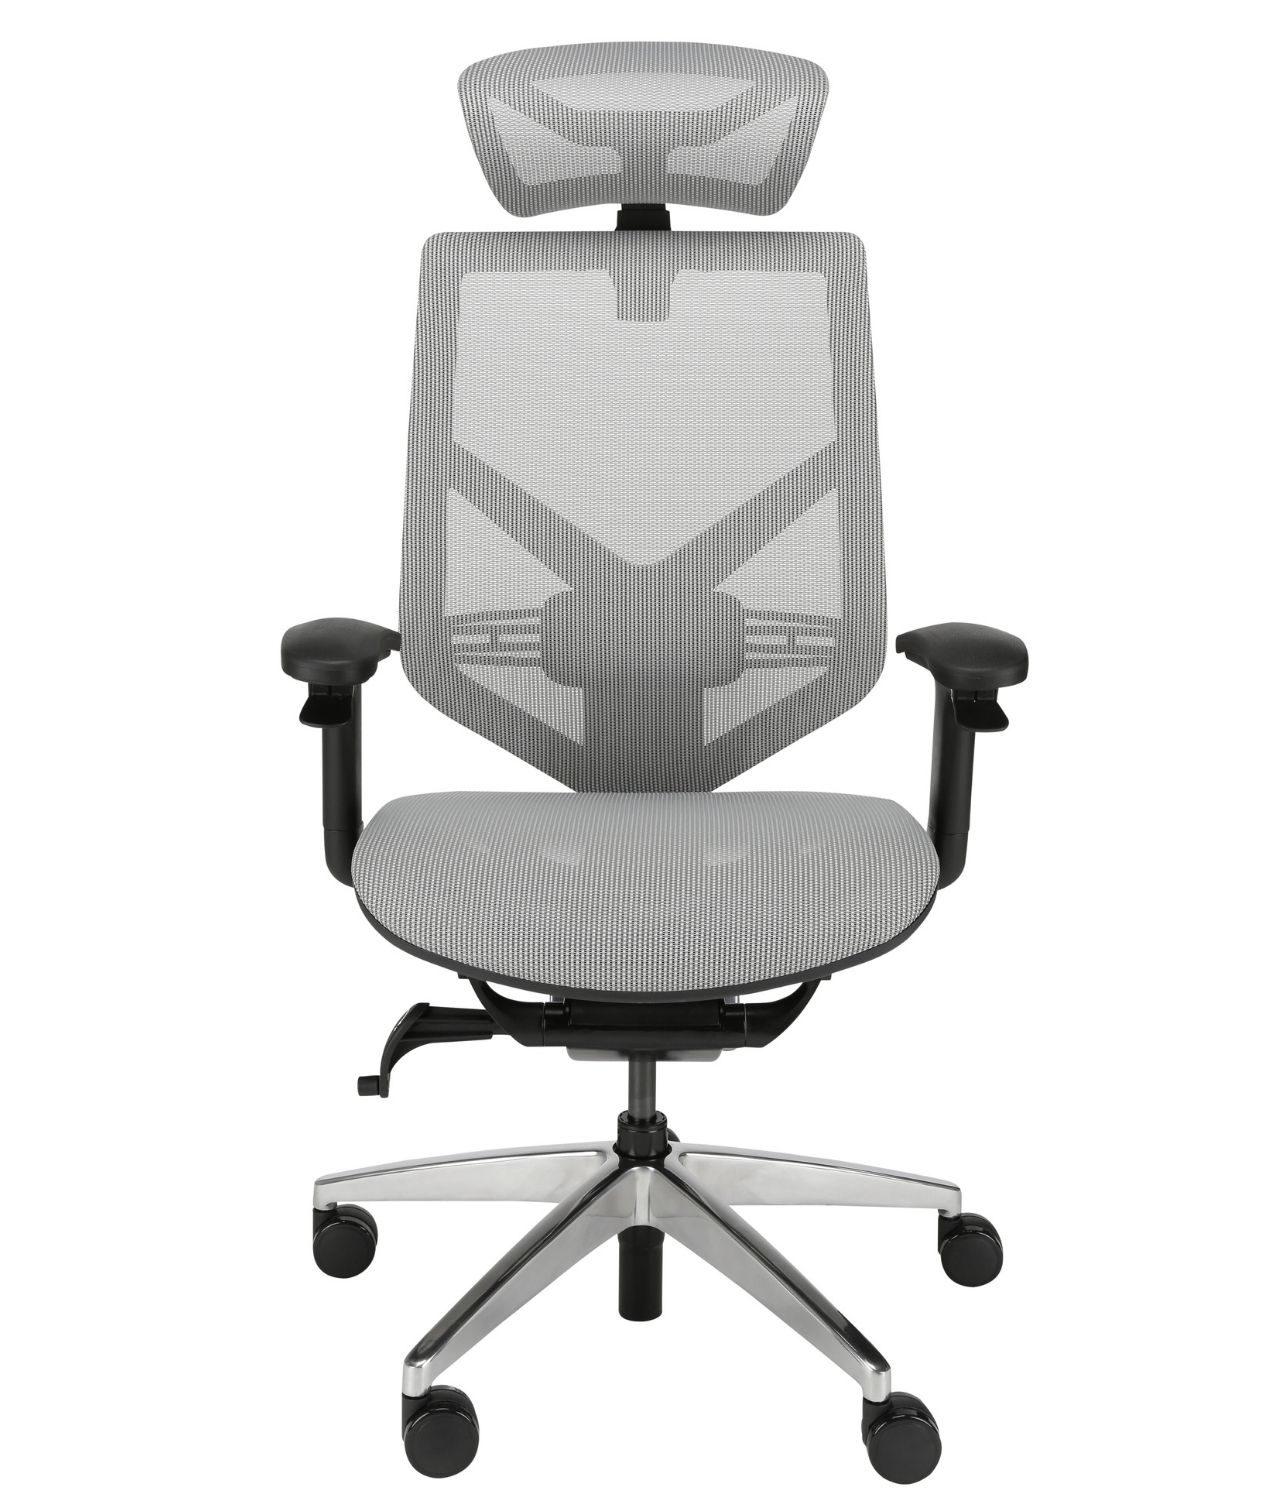 Wygodny fotel ergonomiczny biurowy Zhuo Insight szary